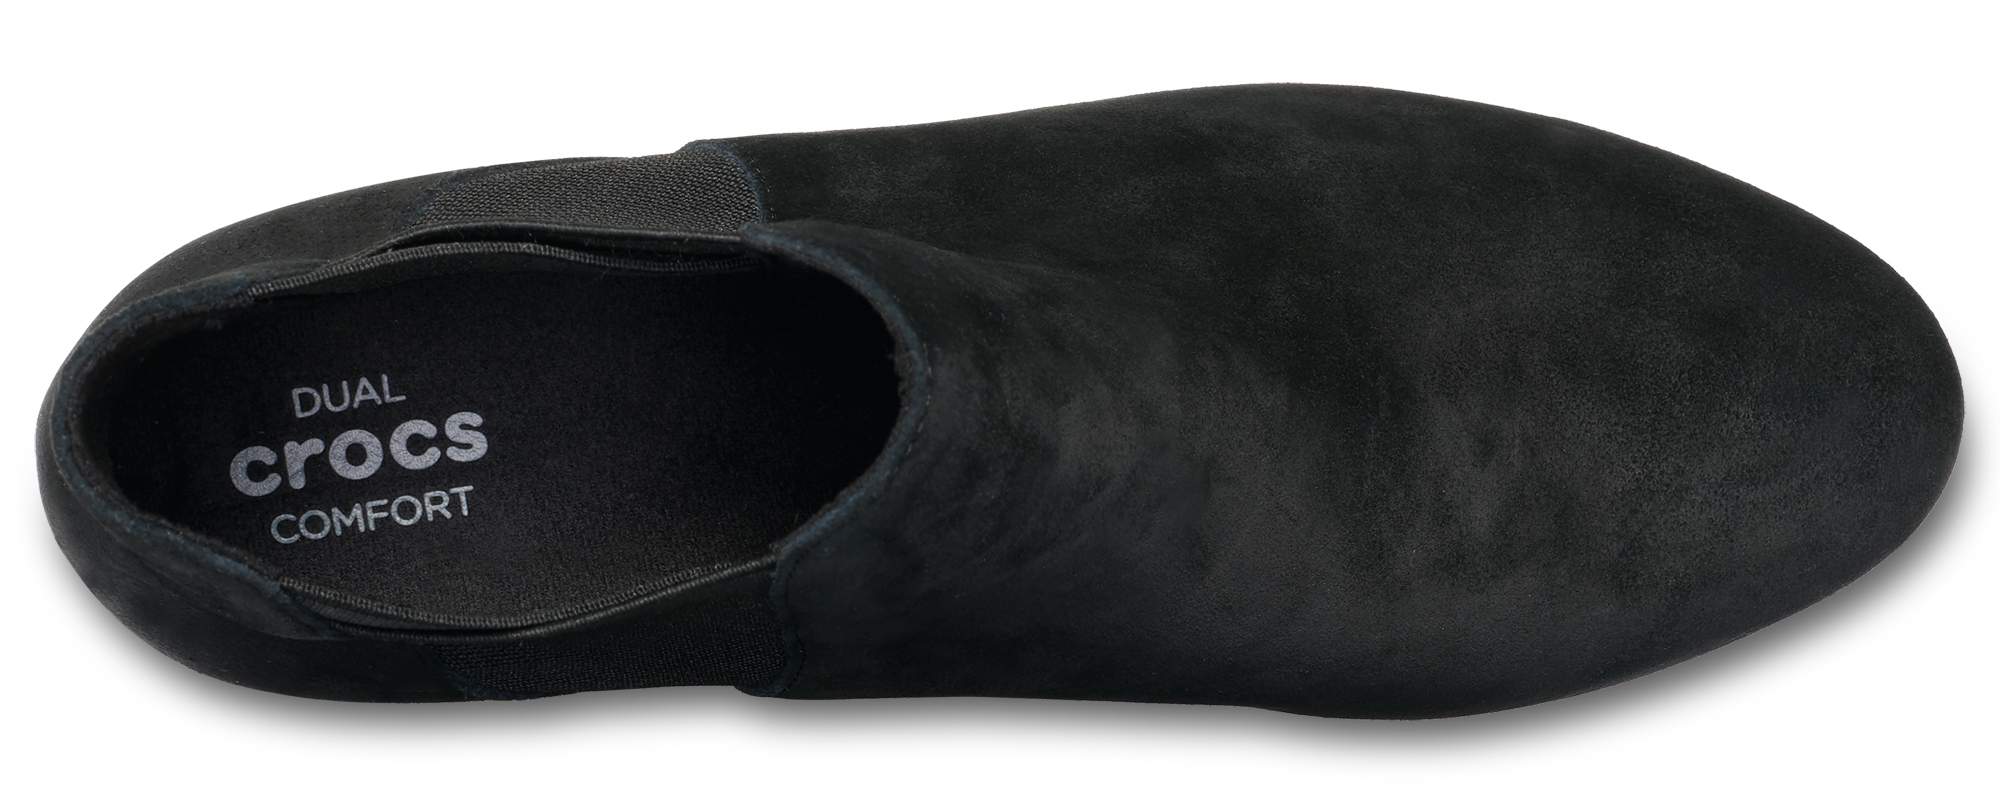 crocs women's leigh wedge chelsea boot